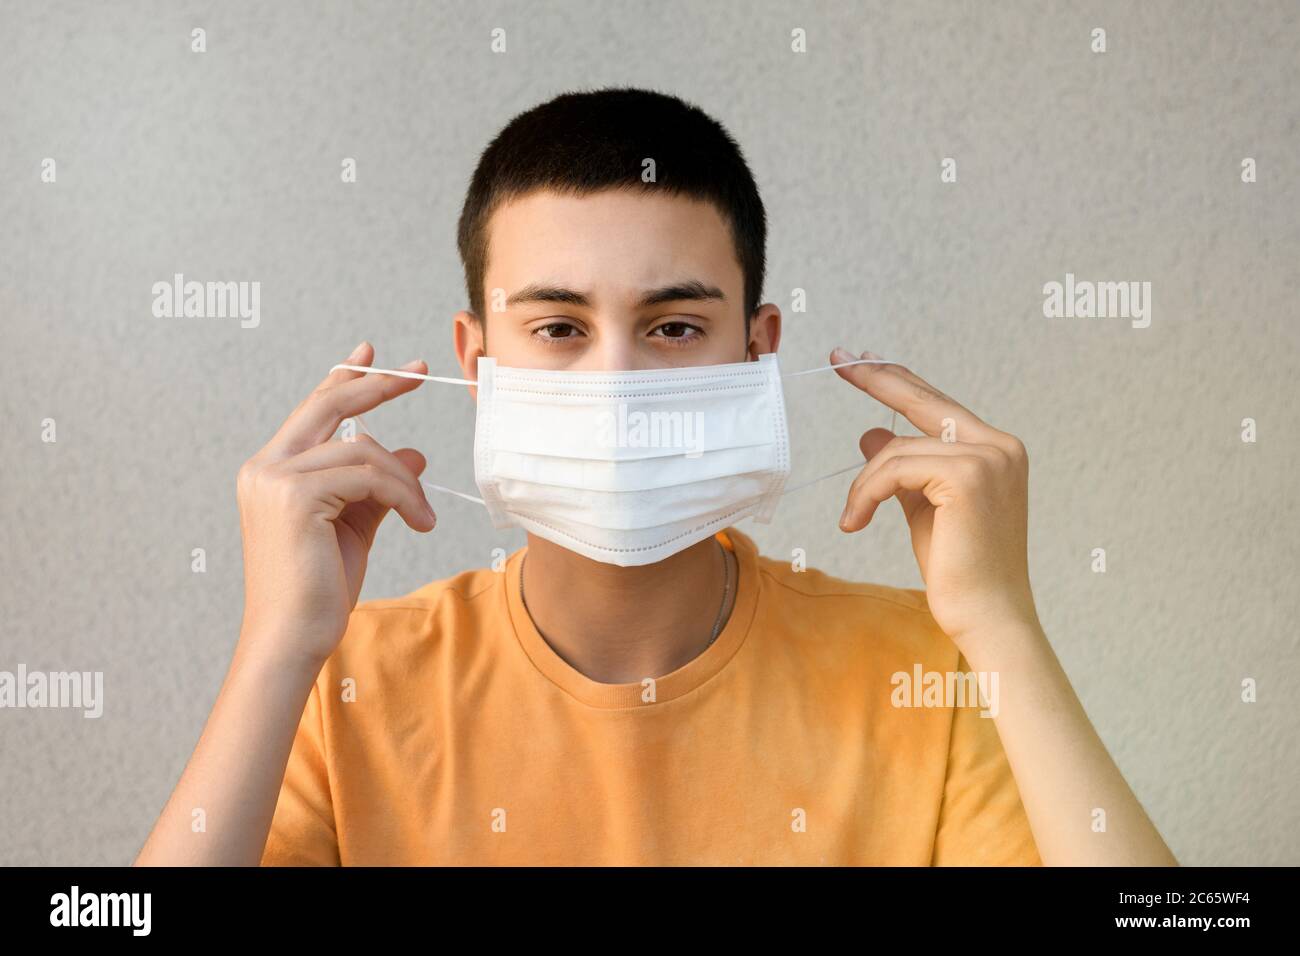 Ragazzo adolescente che tiene una maschera in mano davanti al viso per il controllo delle infezioni durante il coronavirus o Covid-19 pandemia contro un bianco Foto Stock